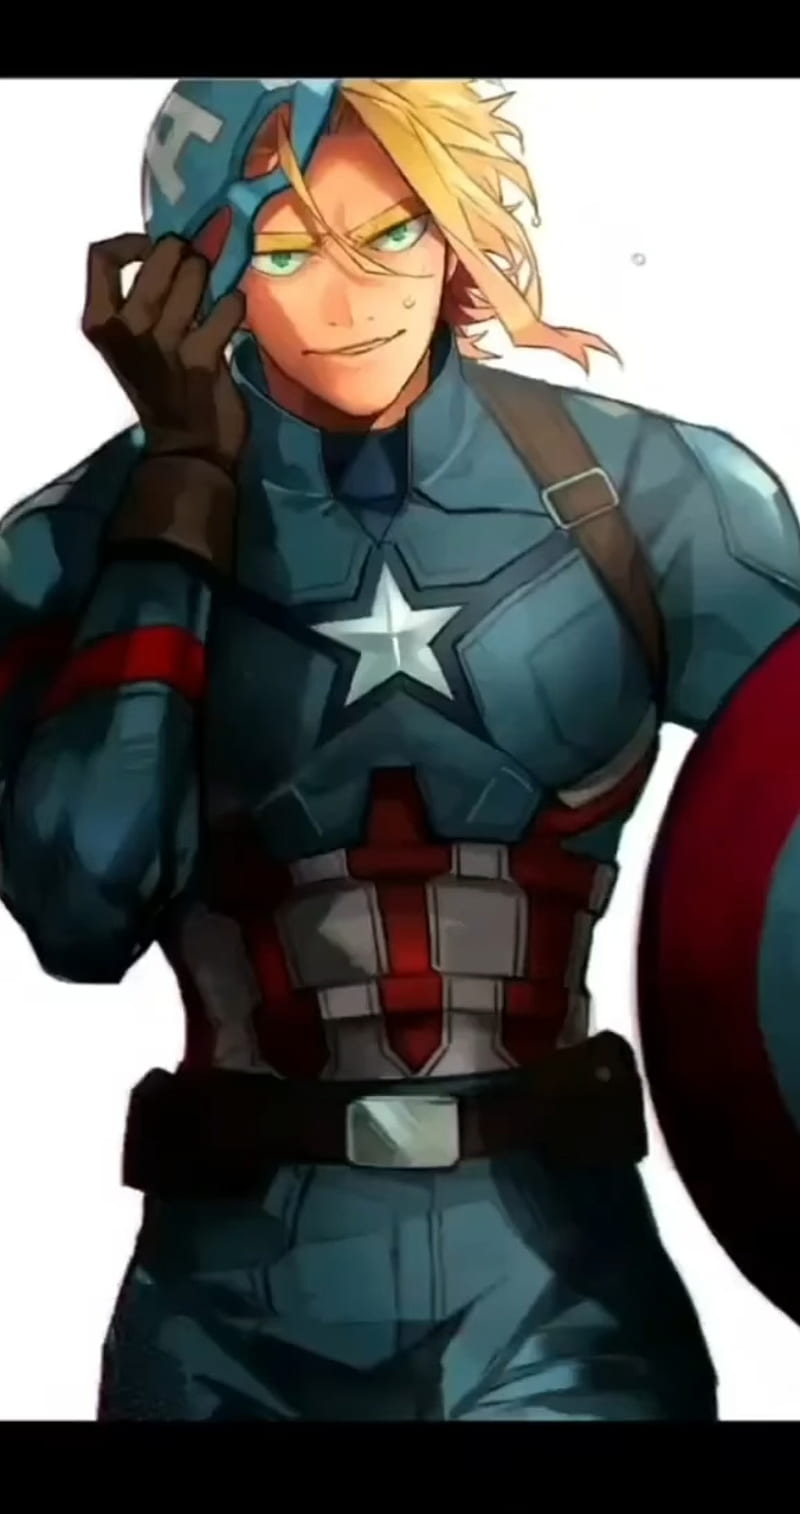 Captain Marvel anime by joehanif on DeviantArt